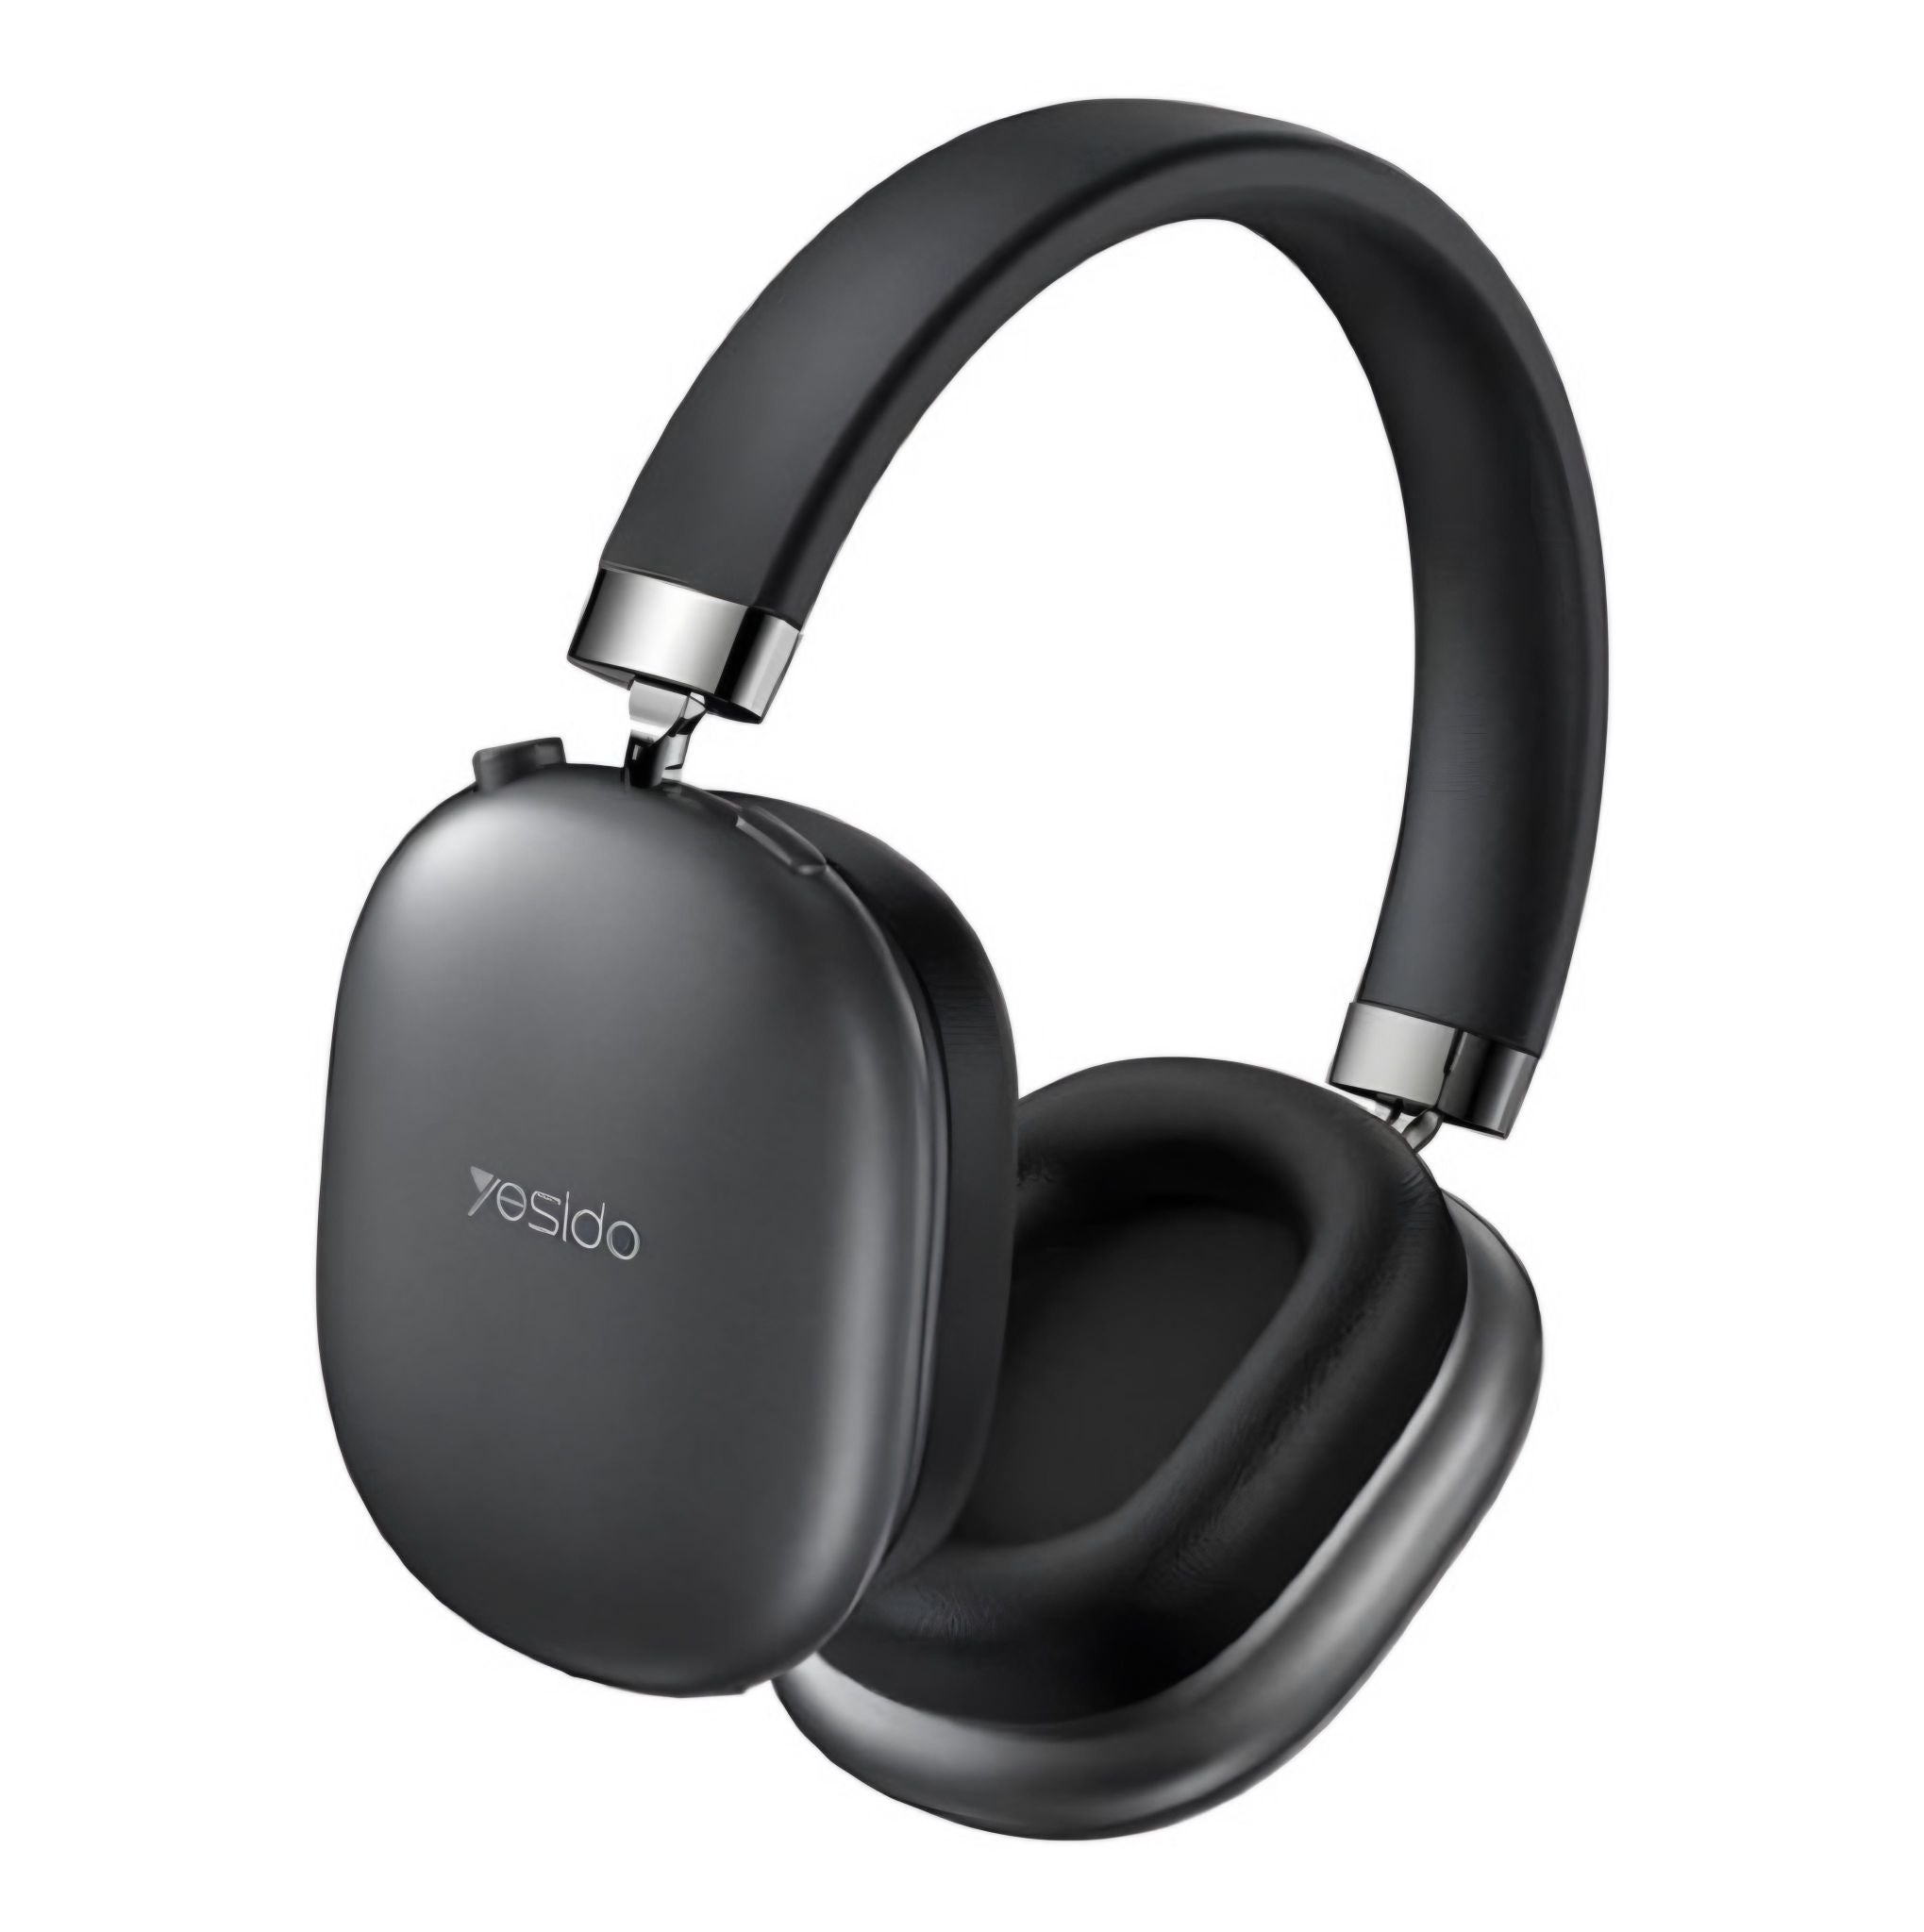 YESIDO EP05 wireless headset